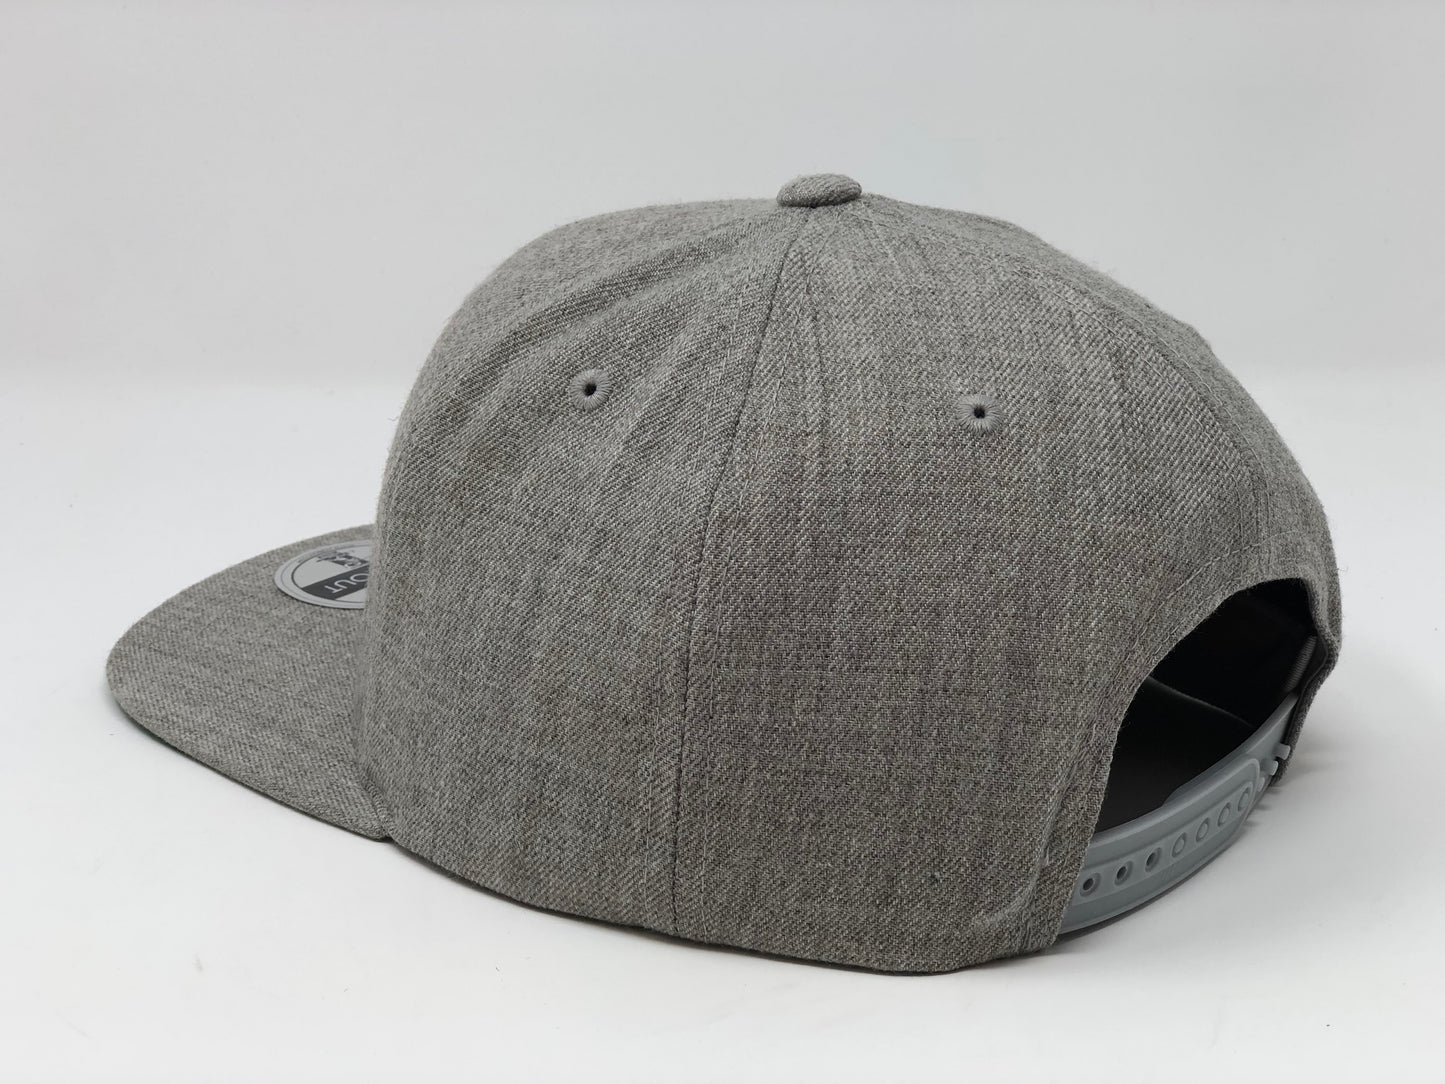 Fernando Tatis Jr 23 Hat - Grey Snapback